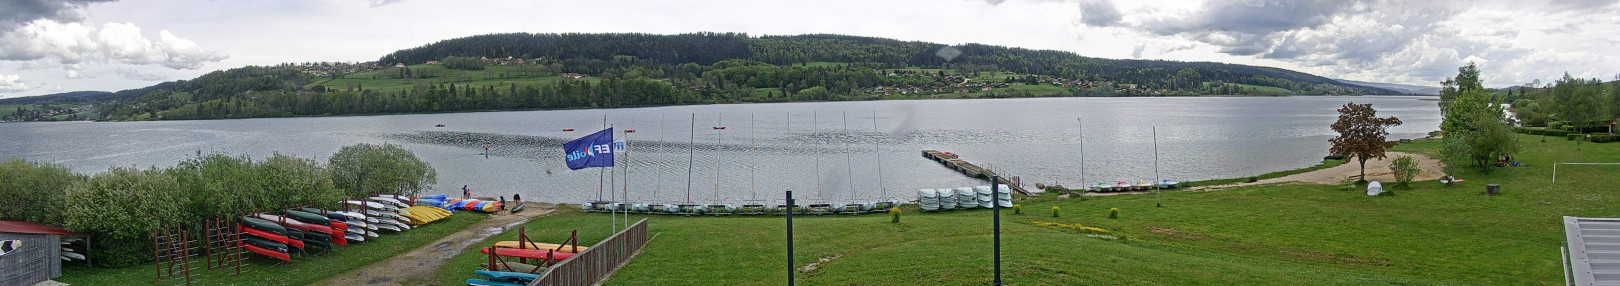 Les Grangettes - Lac Saint-Point